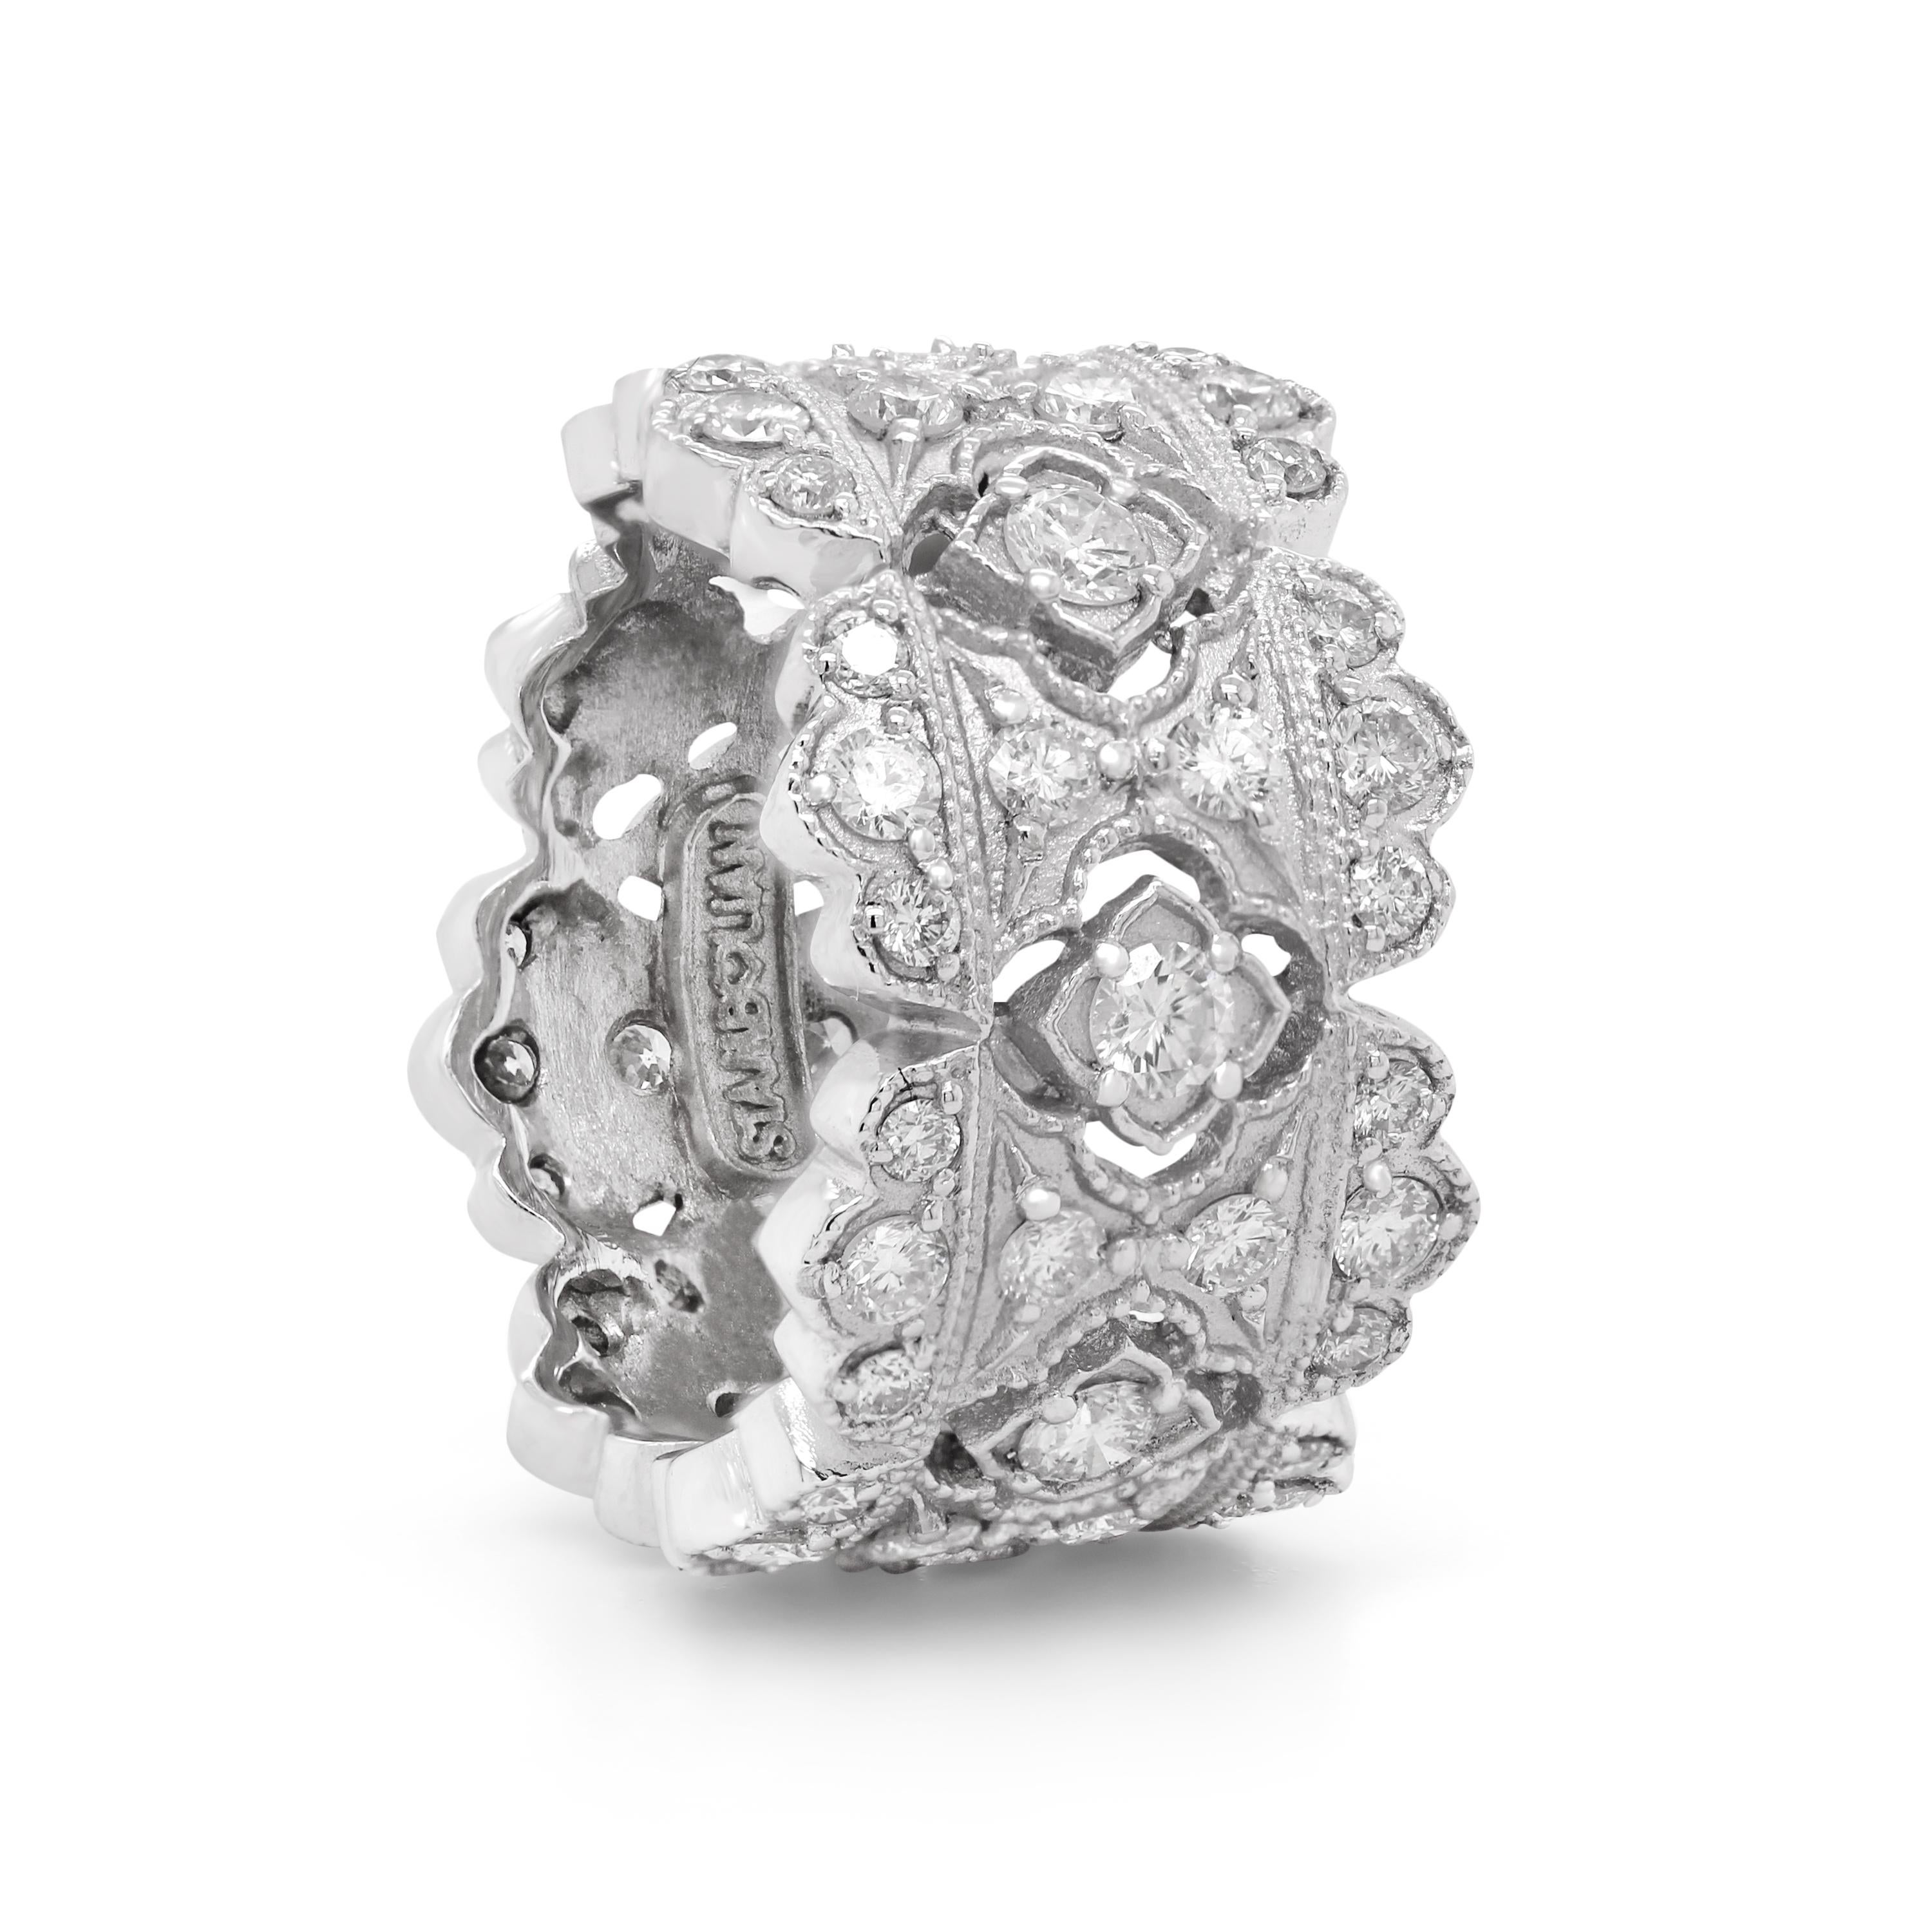 Stambolian: 18 Karat Weißgold Diamant-Ring mit breitem Band aus der Passion Collection

Dies ist der Bandring aus der 